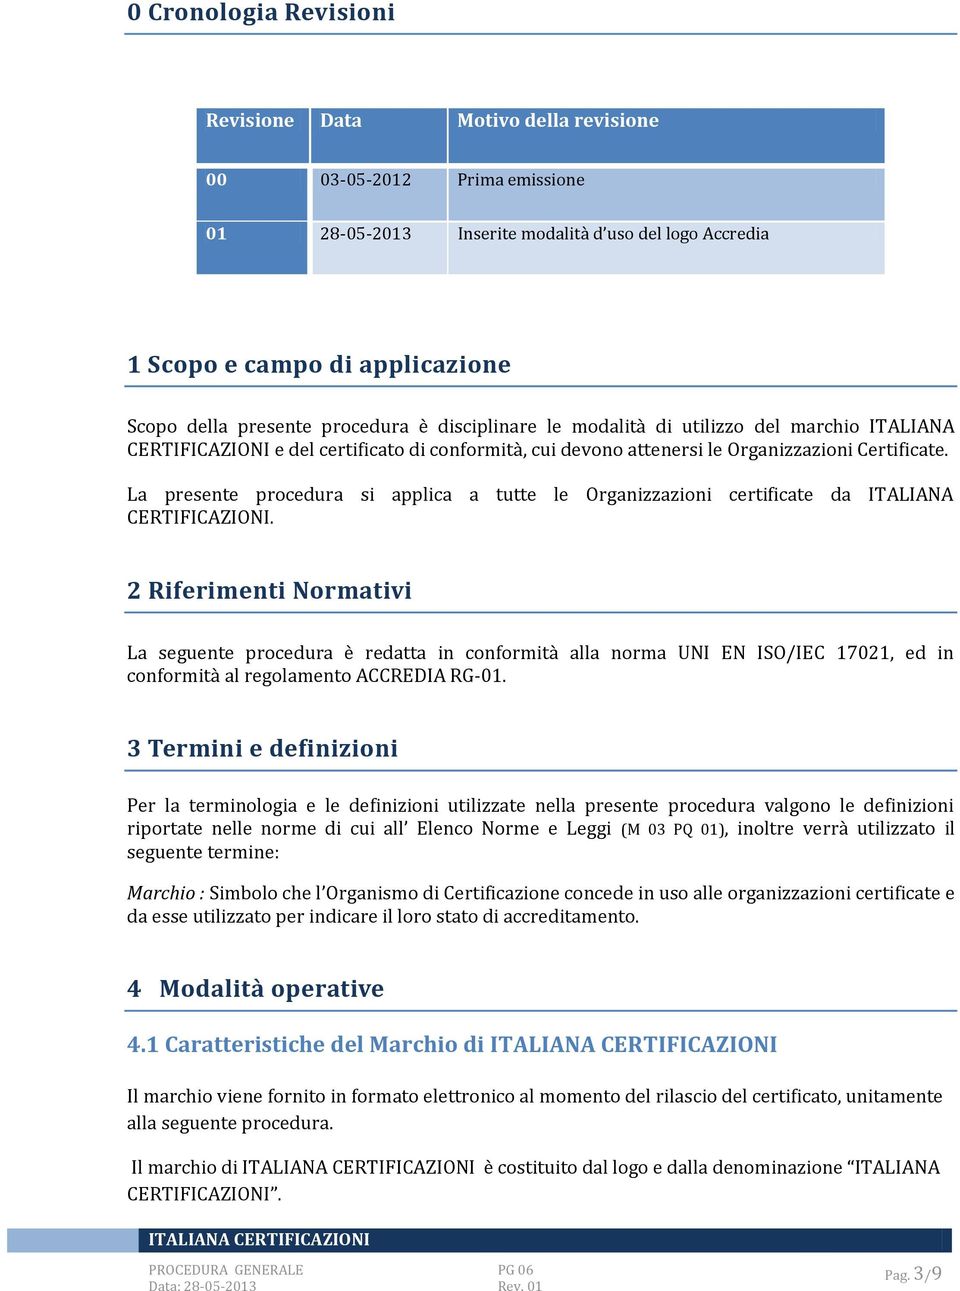 La presente procedura si applica a tutte le Organizzazioni certificate da ITALIANA CERTIFICAZIONI.